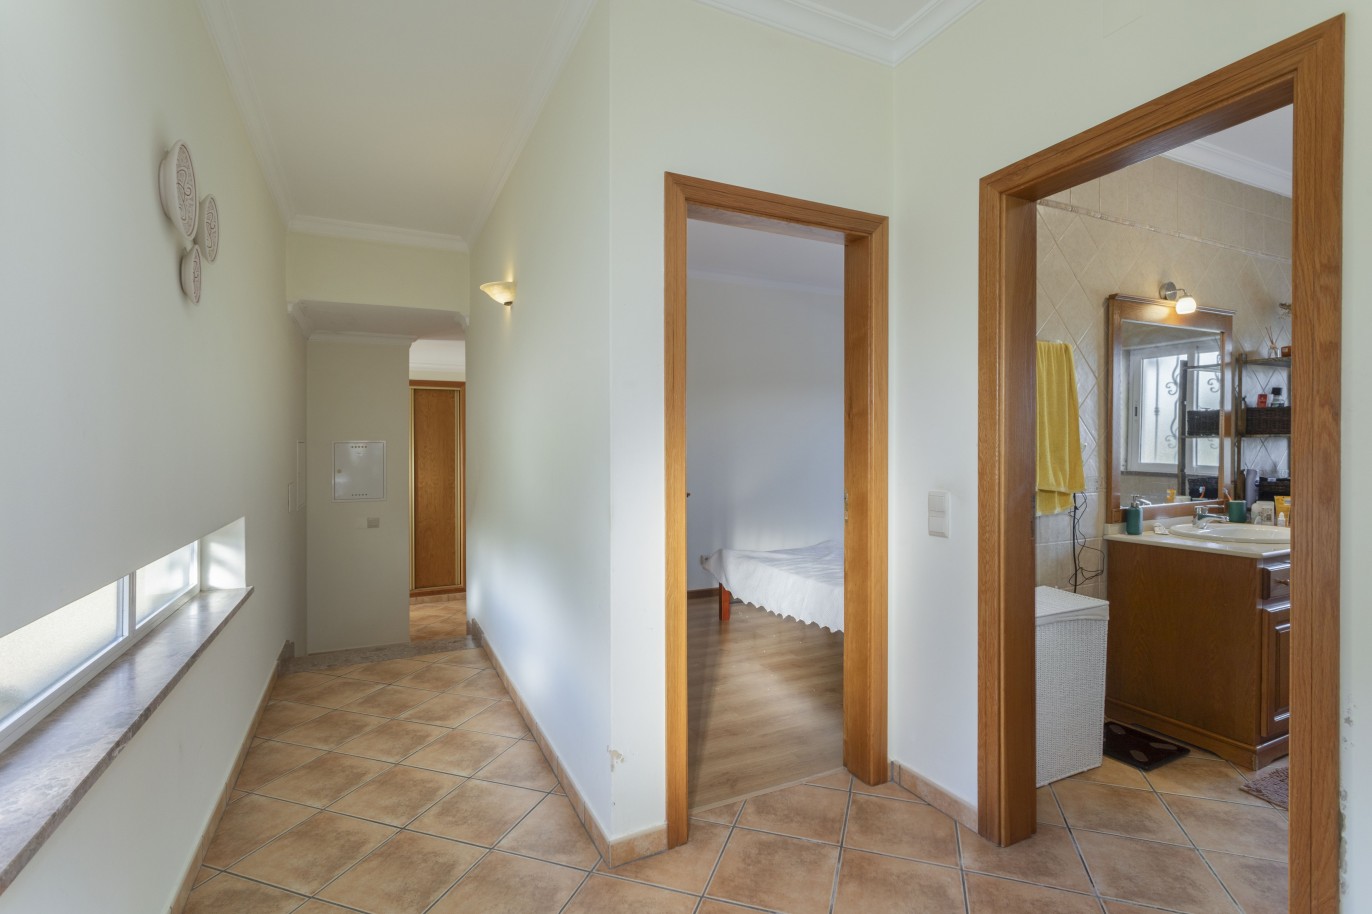 4 bedroom villa with pool, for sale in São Brás de Alportel, Algarve_245020